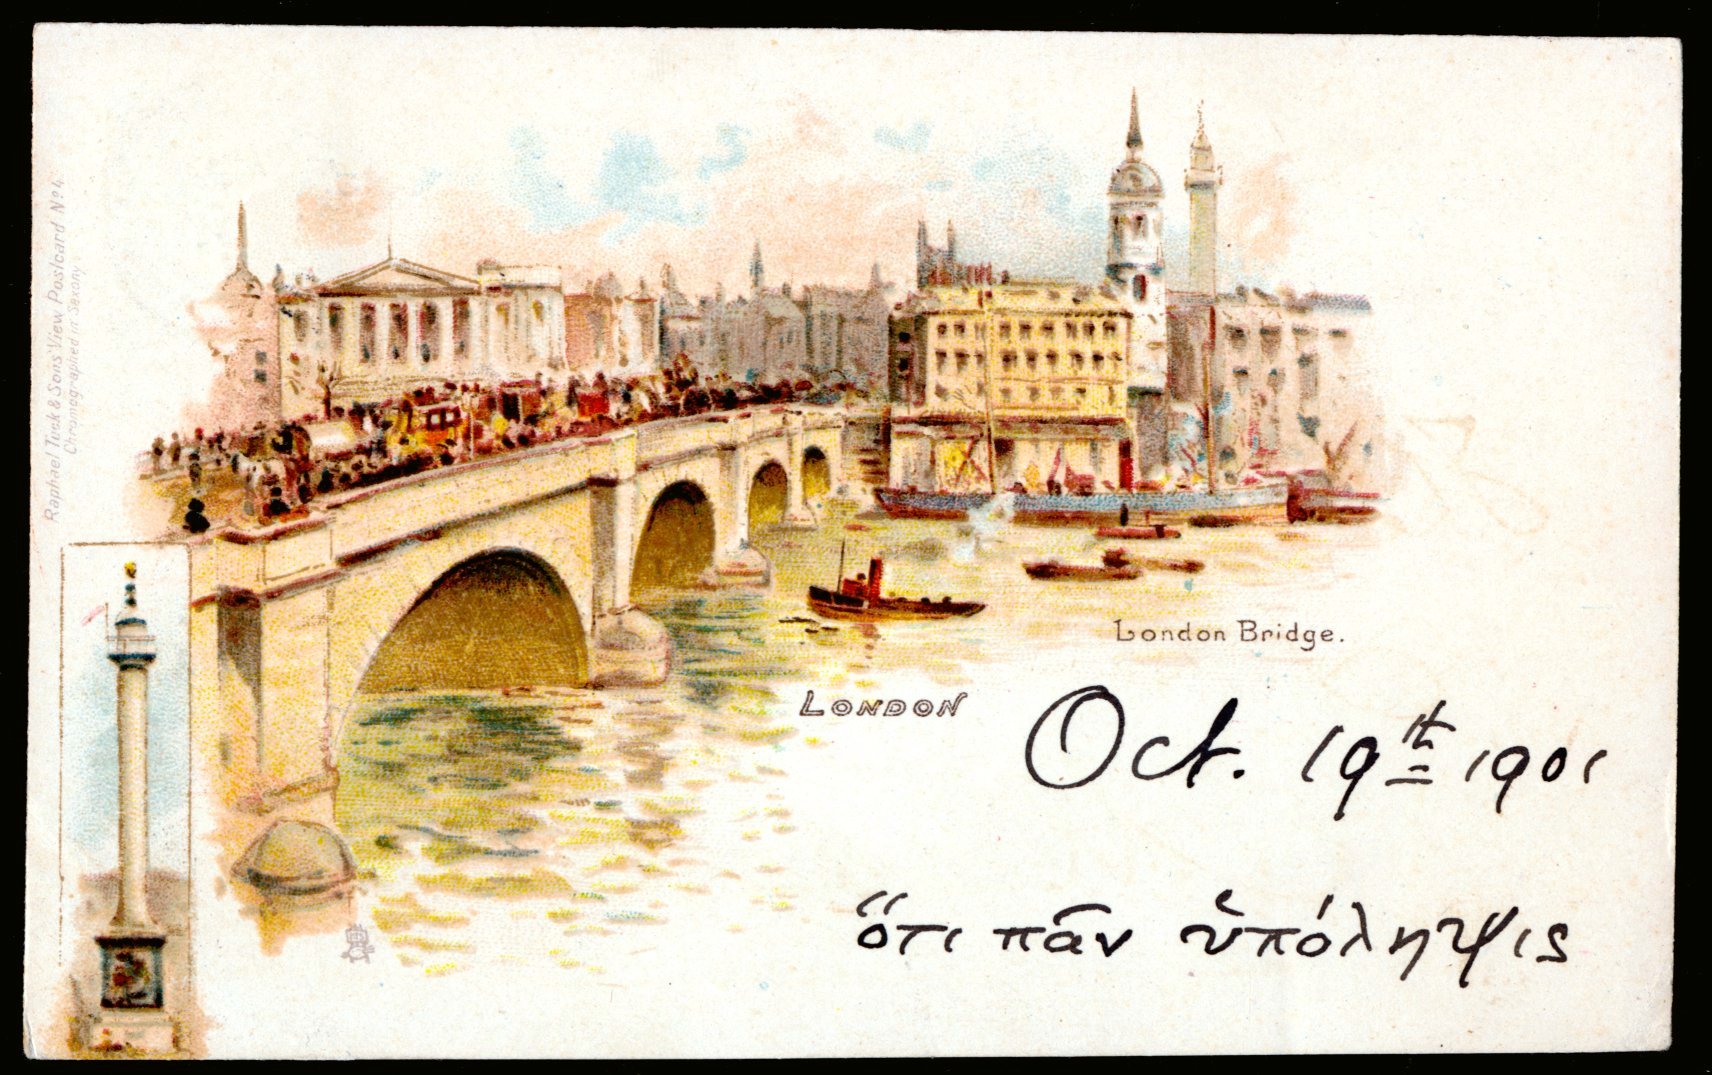 London London Bridge,river view